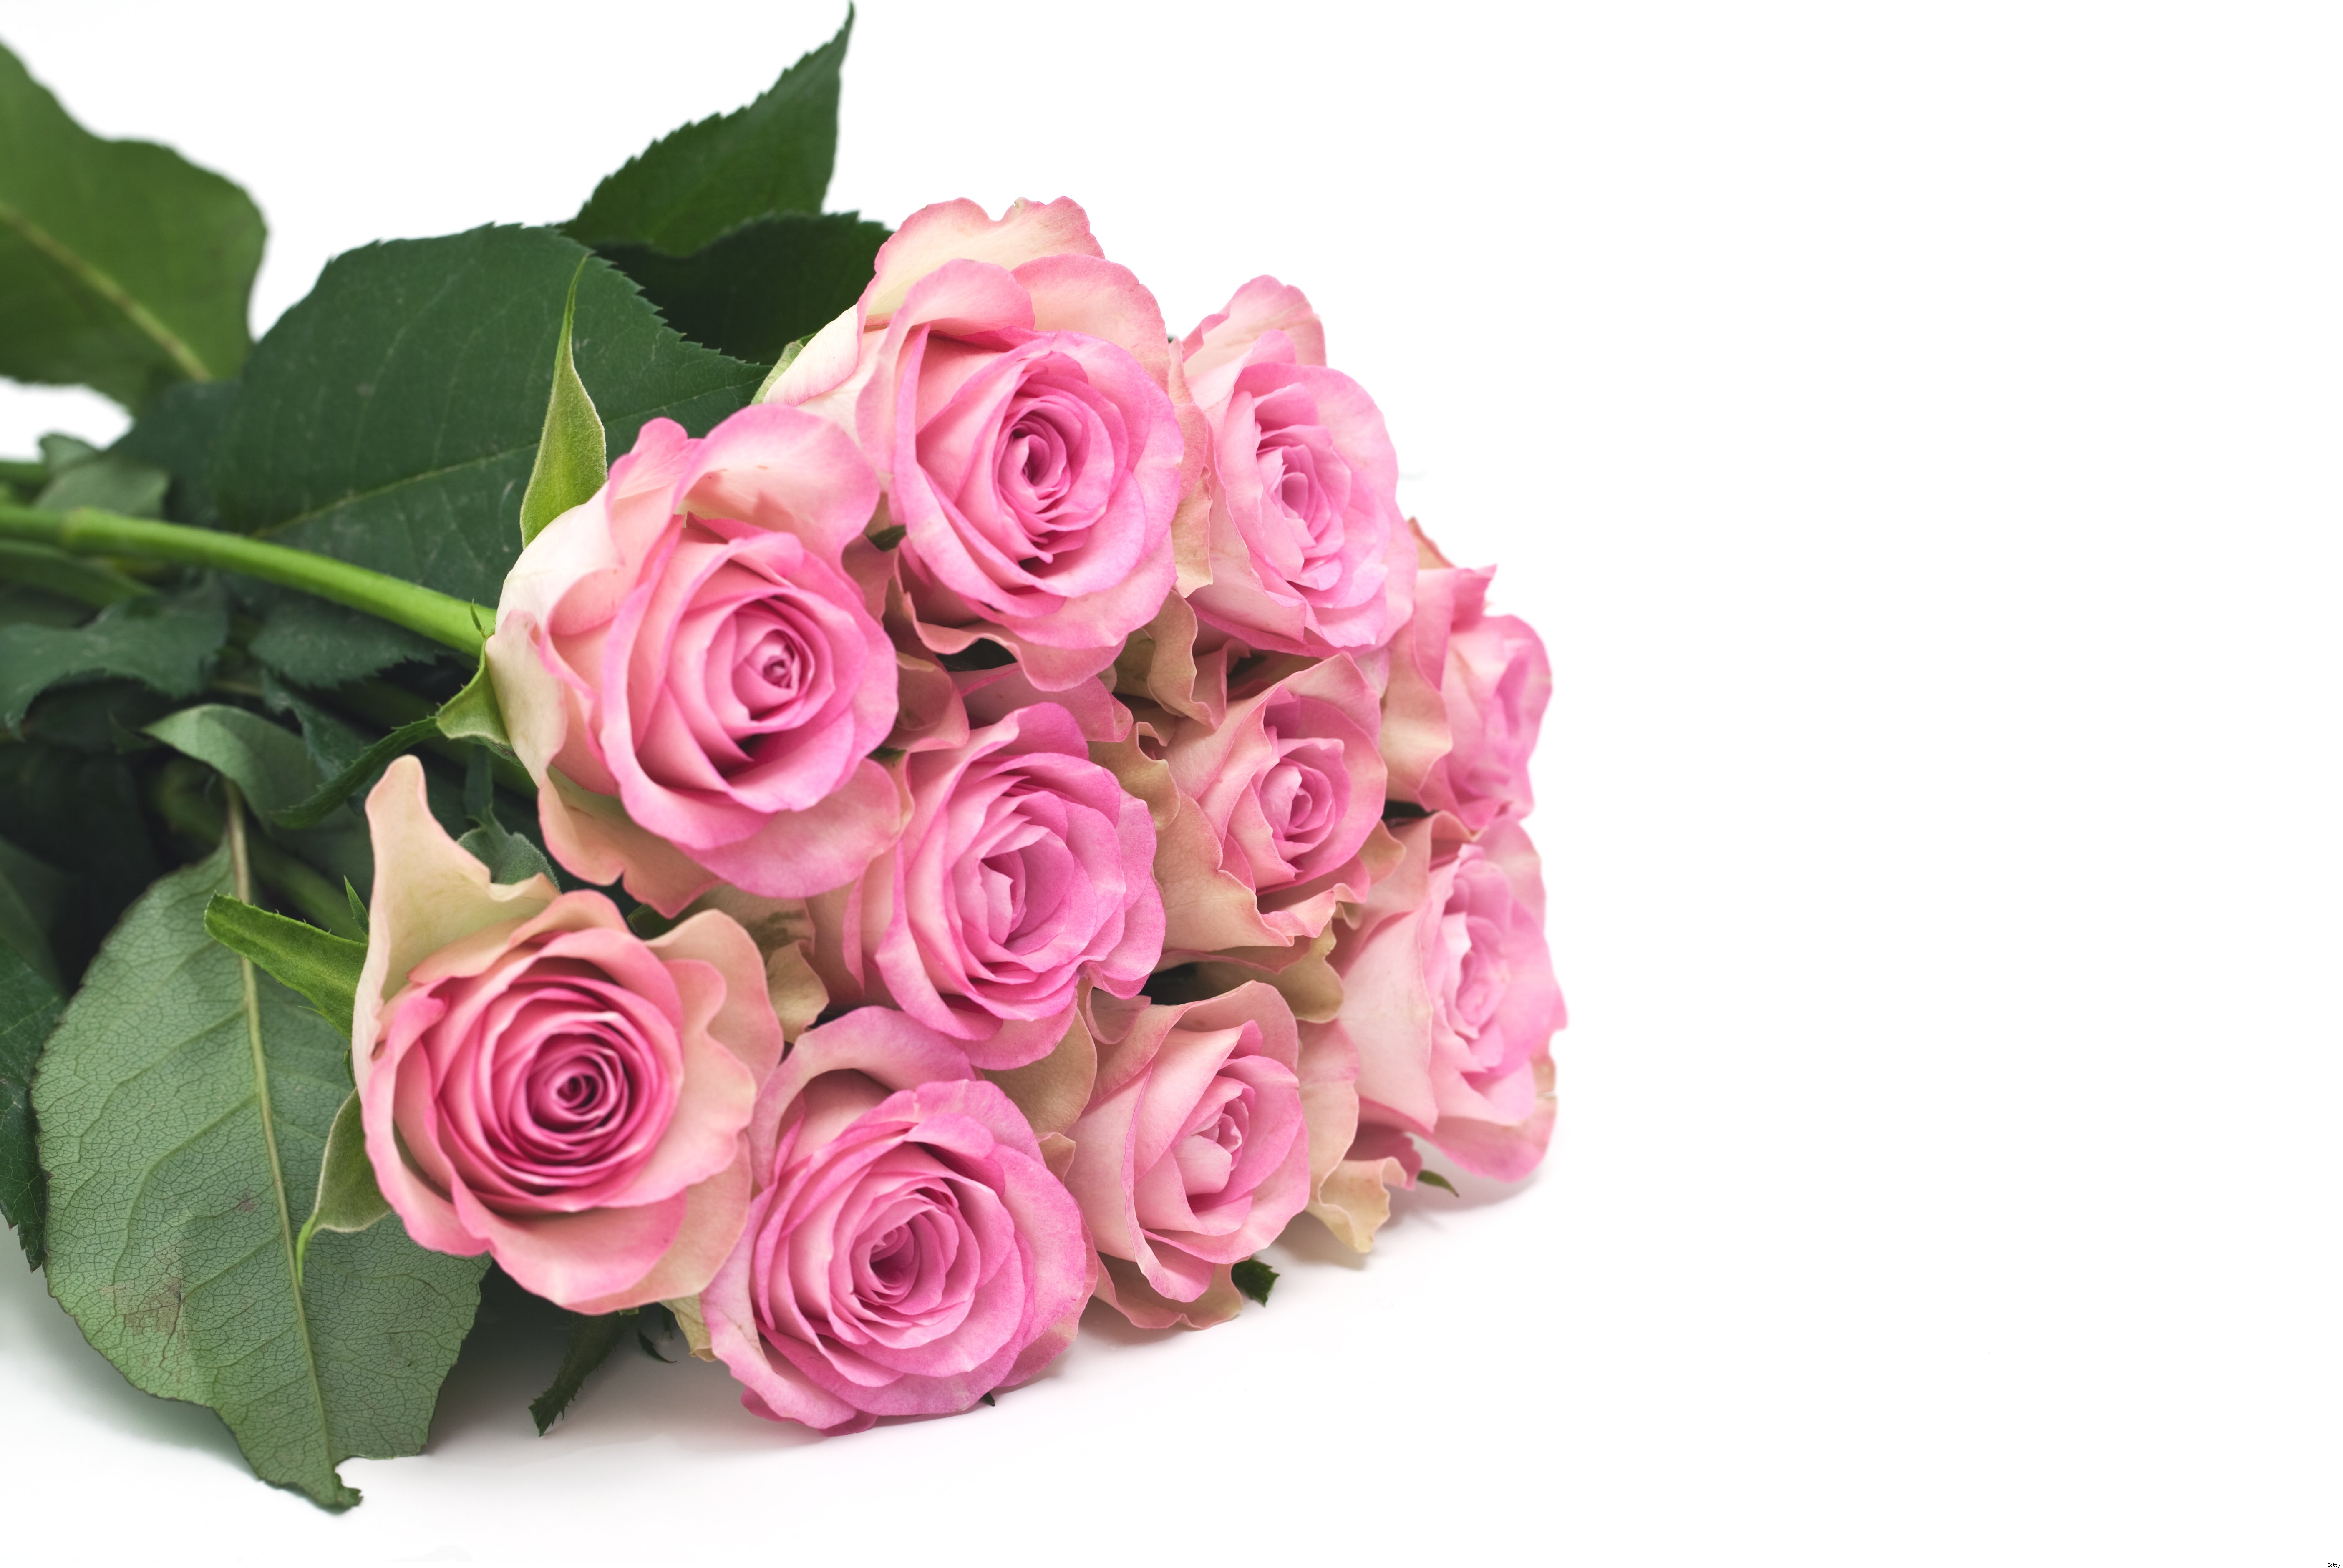 Открытки маме очень красивые. Букет розовых роз. Поздравляю! (Цветок). С днем матери цветы. Открытка цветы.